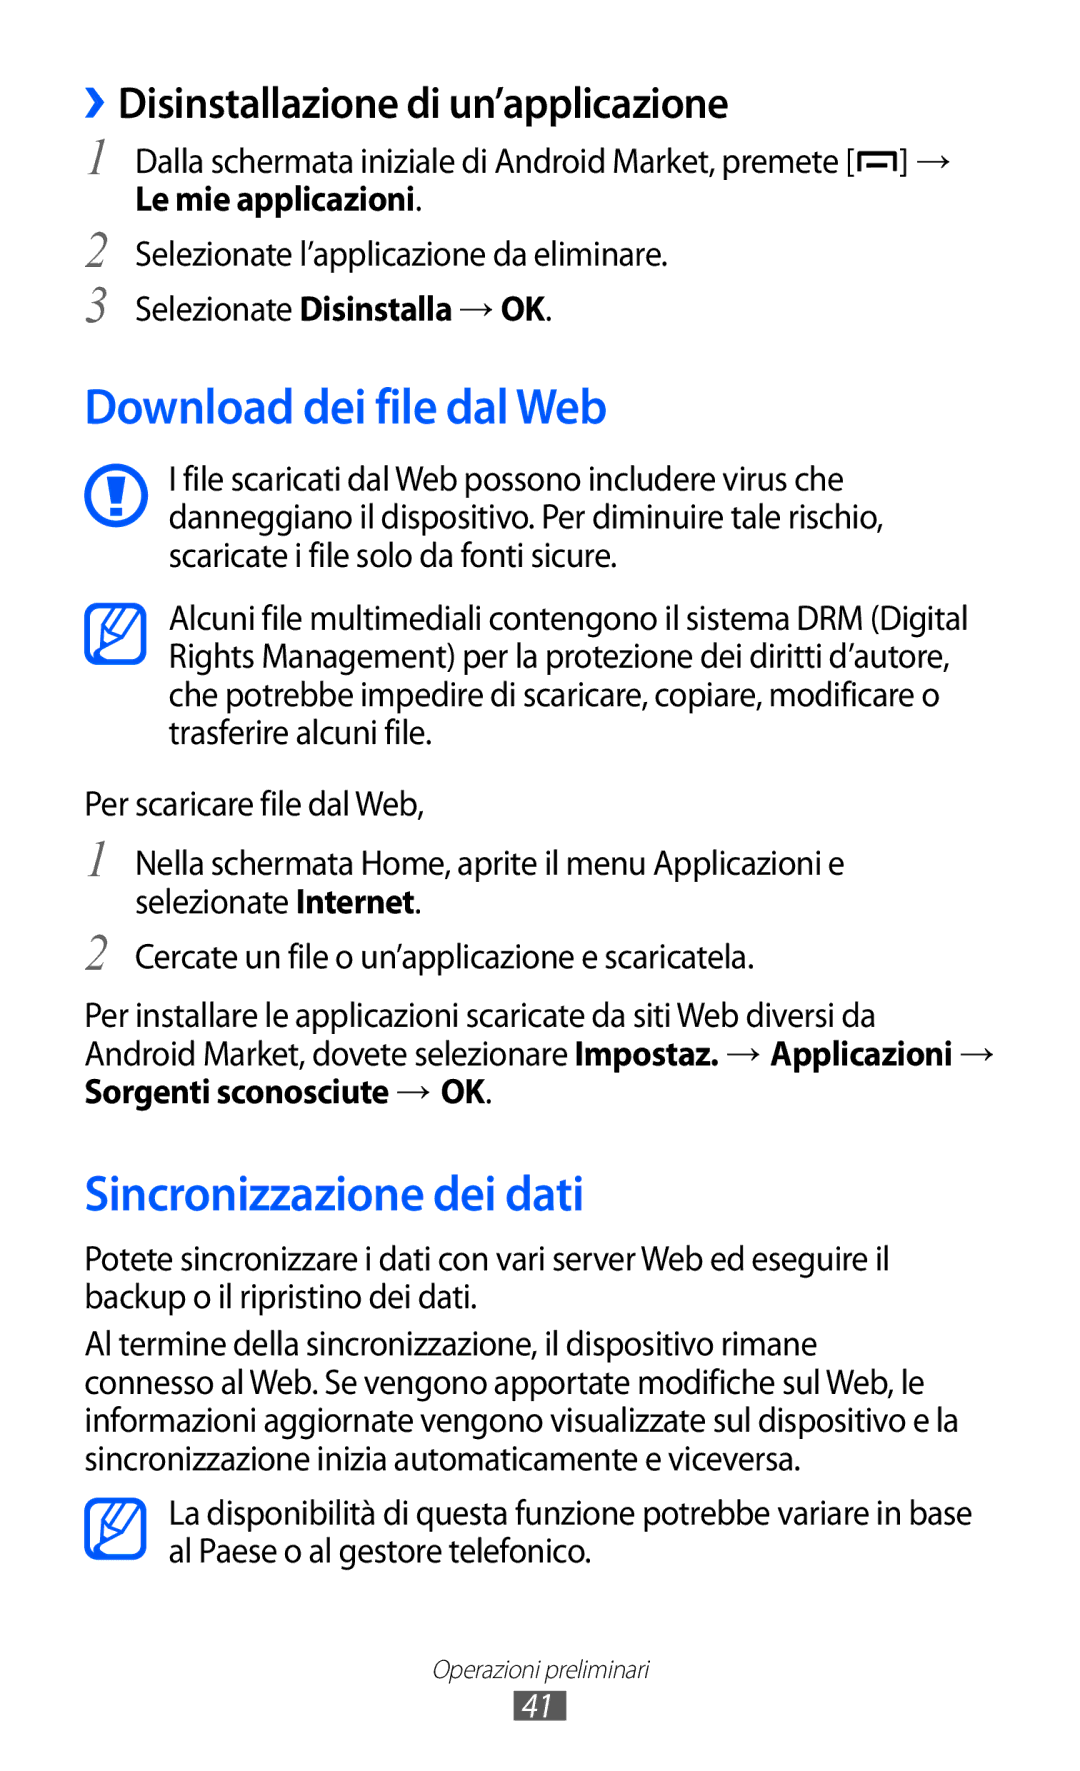 Samsung GT-B5510WSAITV manual Download dei file dal Web, Sincronizzazione dei dati, ››Disinstallazione di un’applicazione 